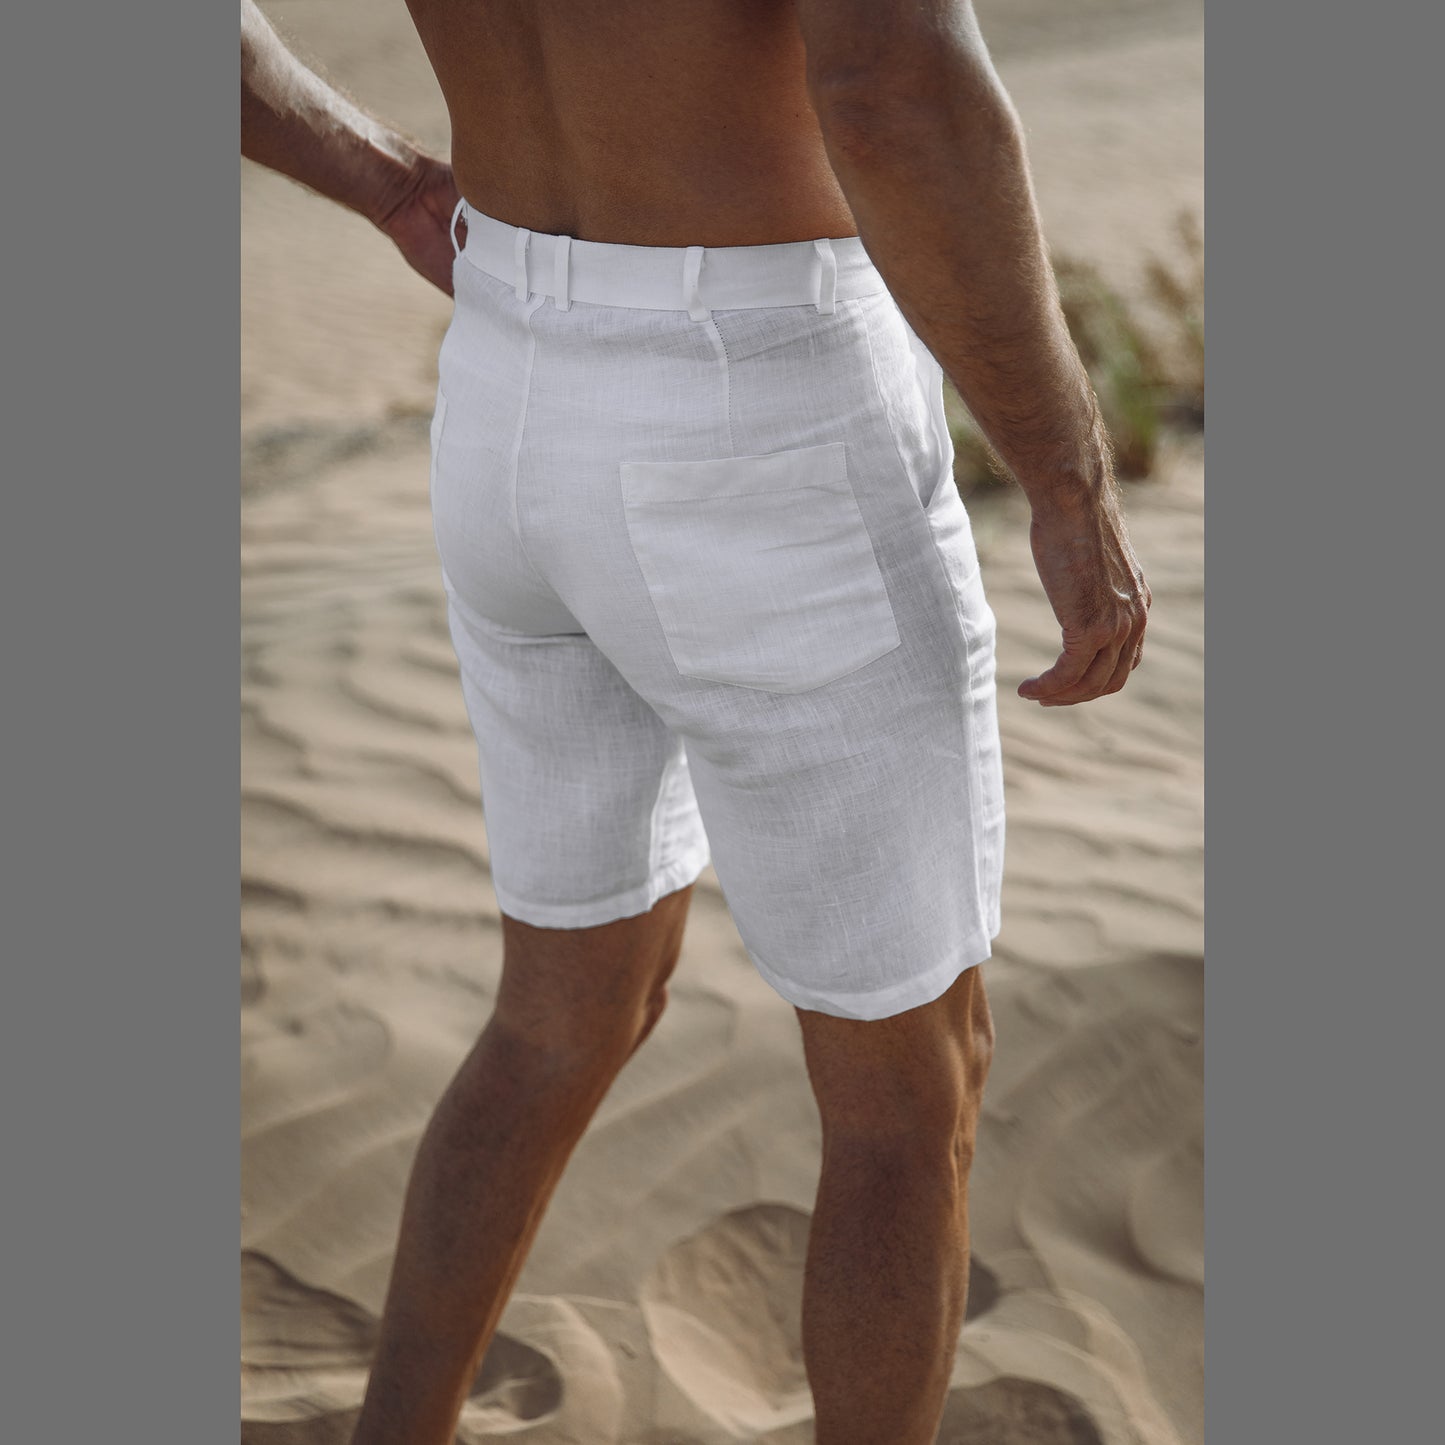 Shorts for Men (100% Hemp, White)